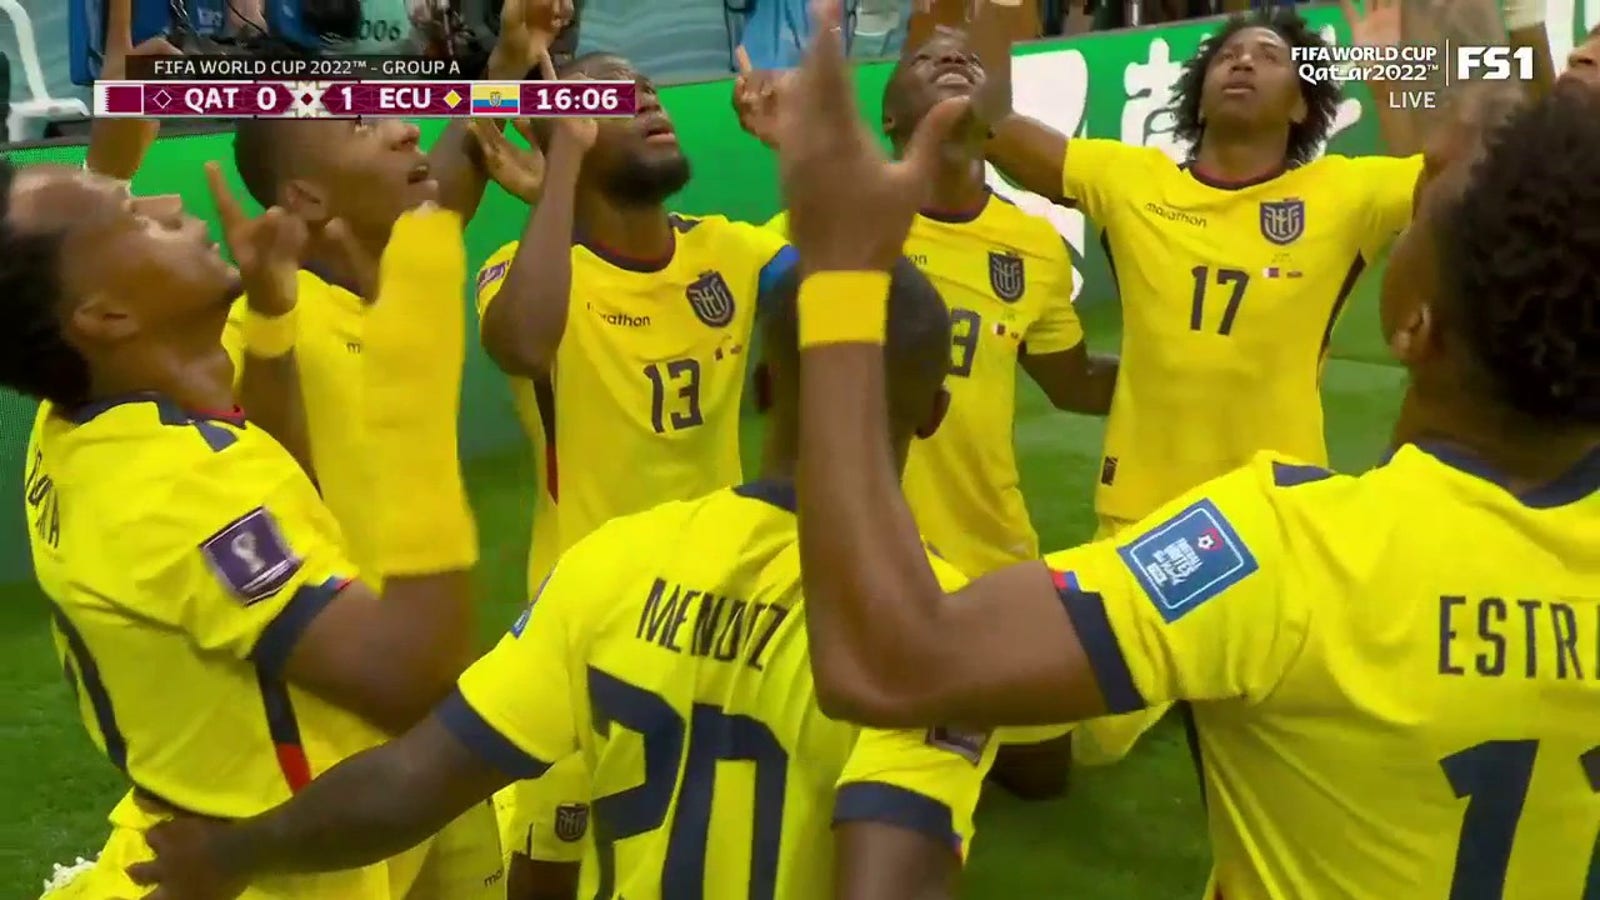 Ecuador's Enner Valencia scores goal vs. Qatar in 15' 